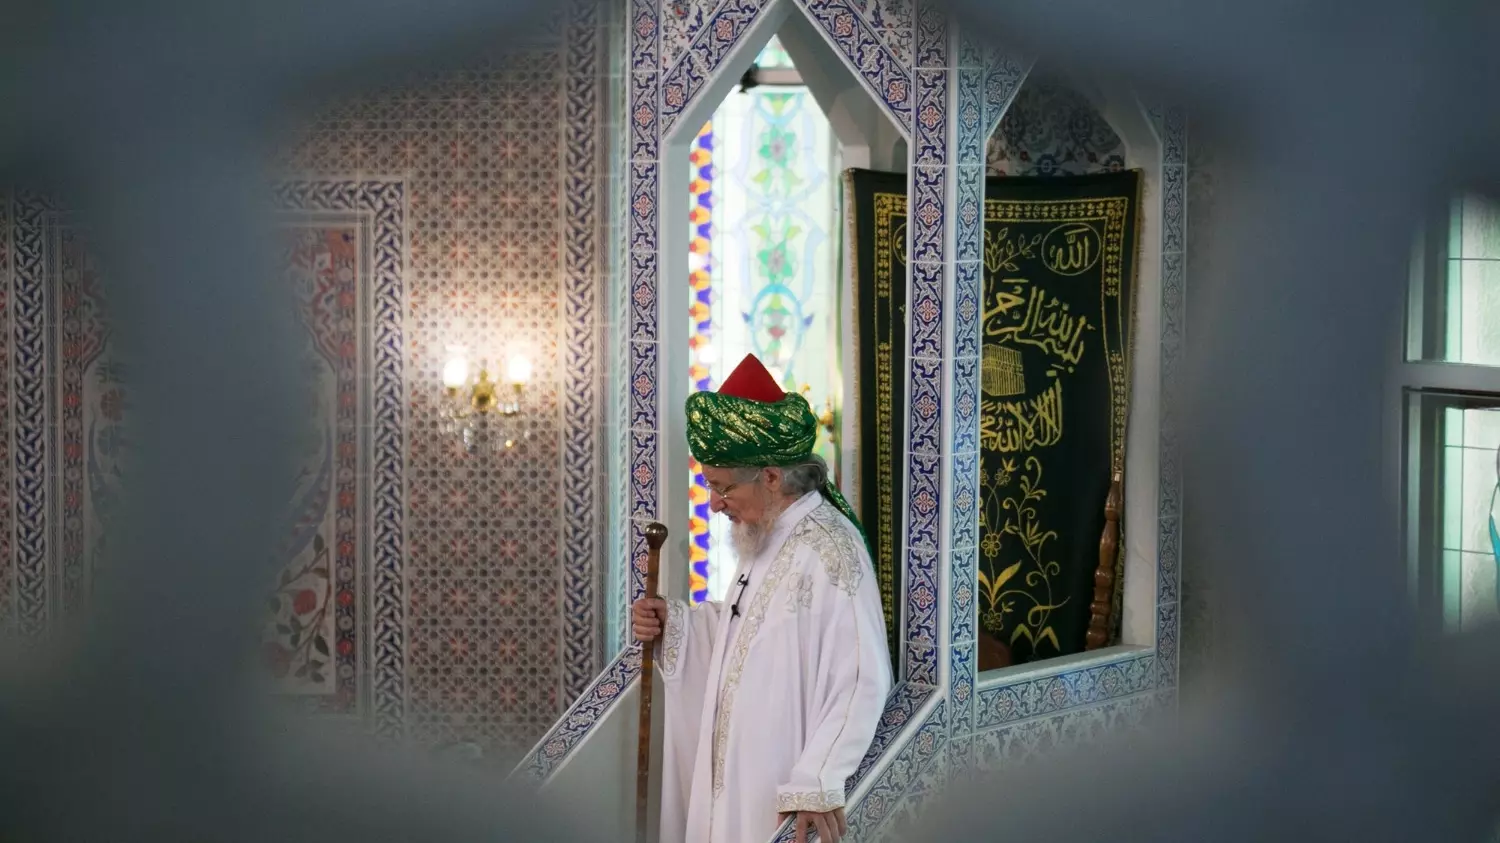 Ранее в Москве верующим рекомендовали совершать праздничную молитву «в домашних условиях», а не посещать массово мечети и молельные дома